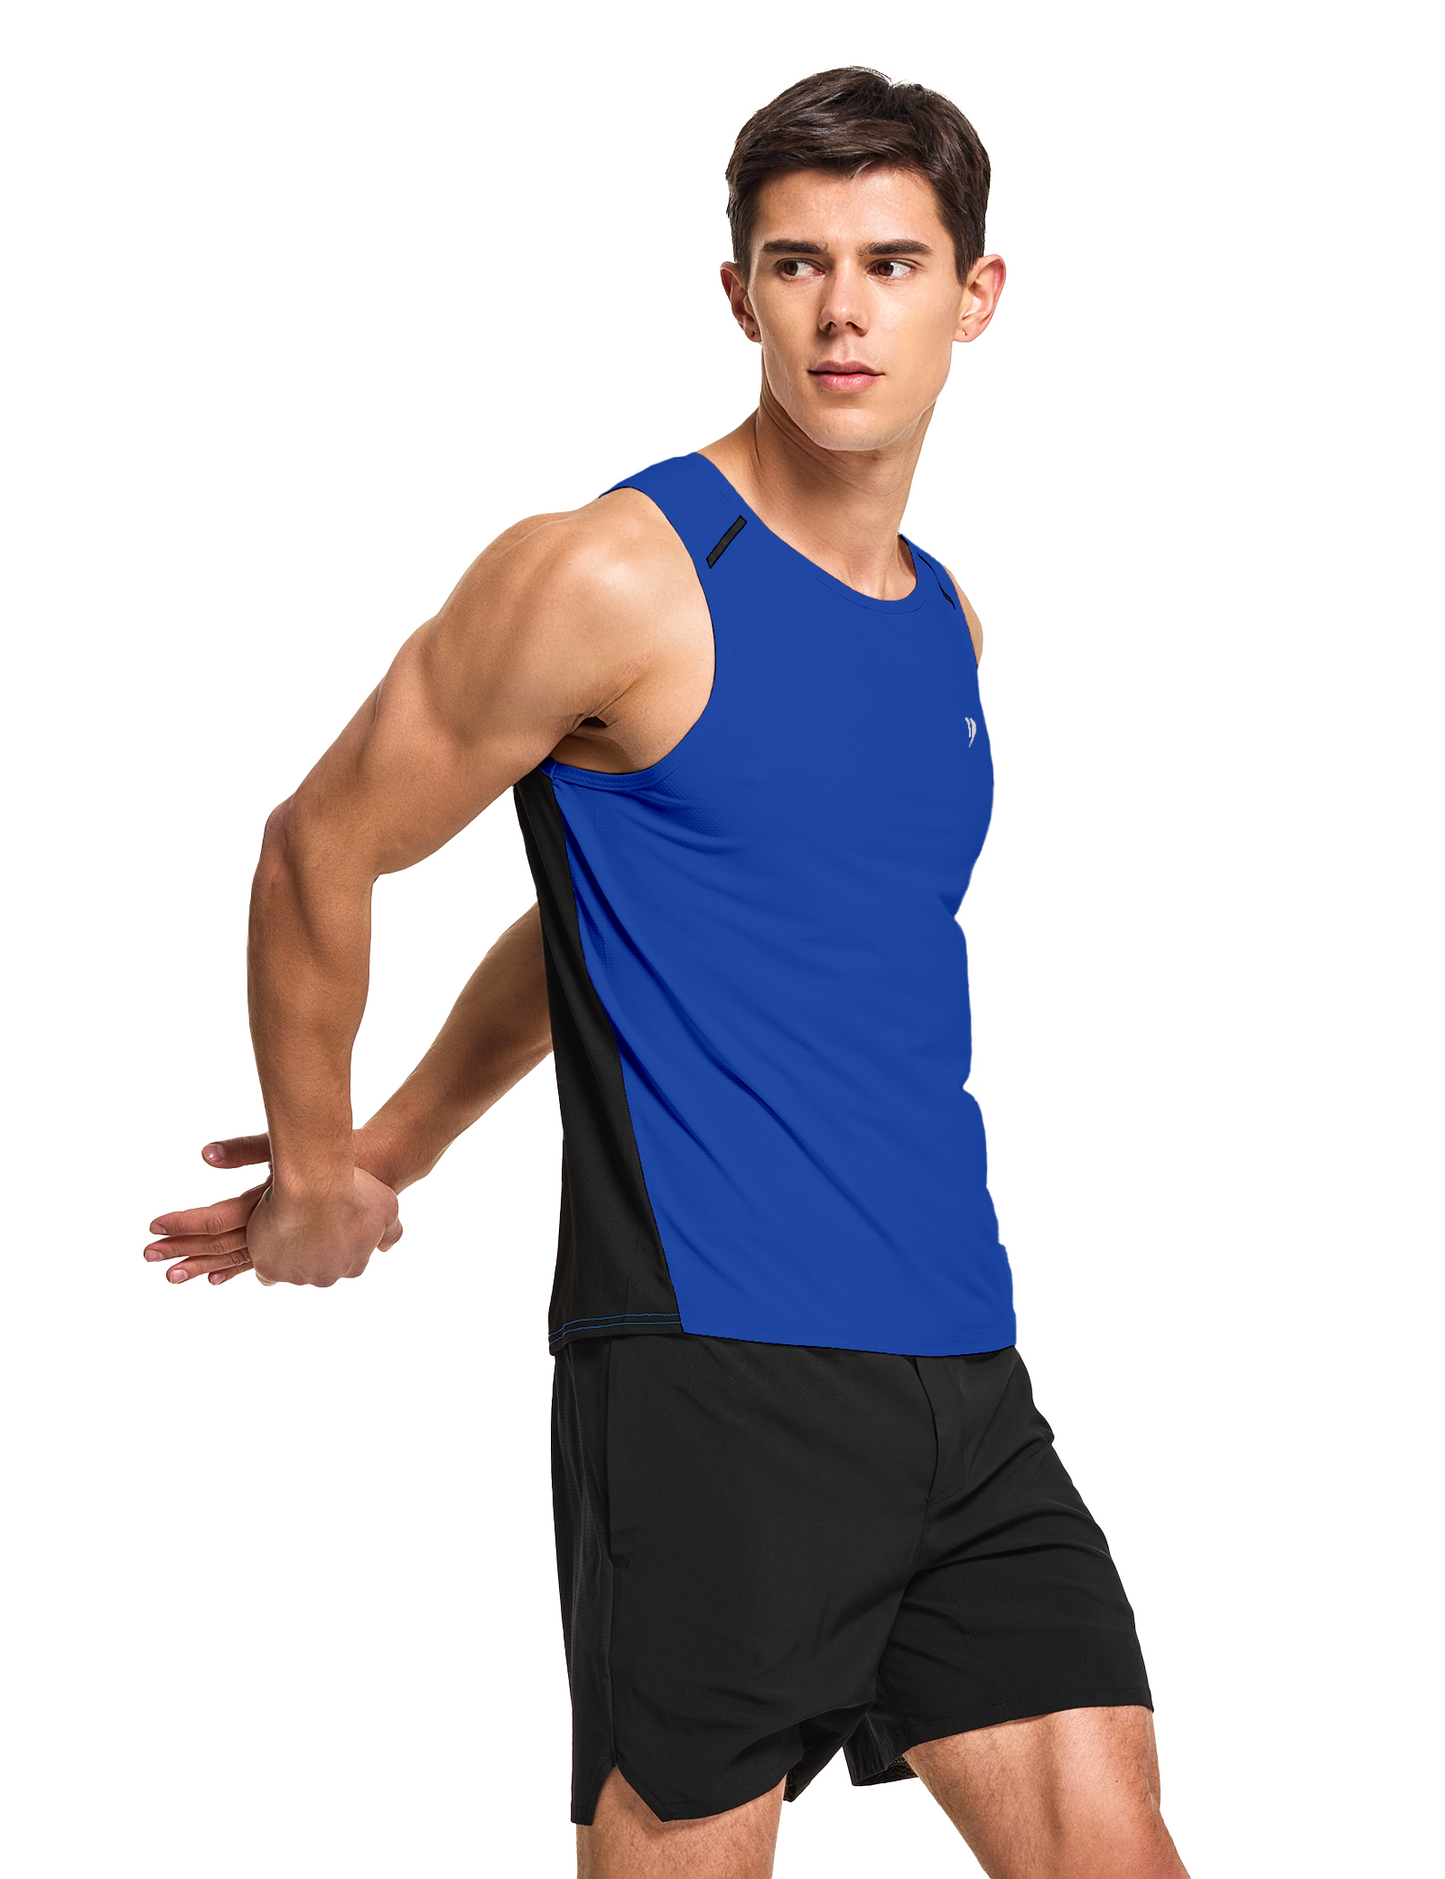 mens running workout gym swim tank top royal blue